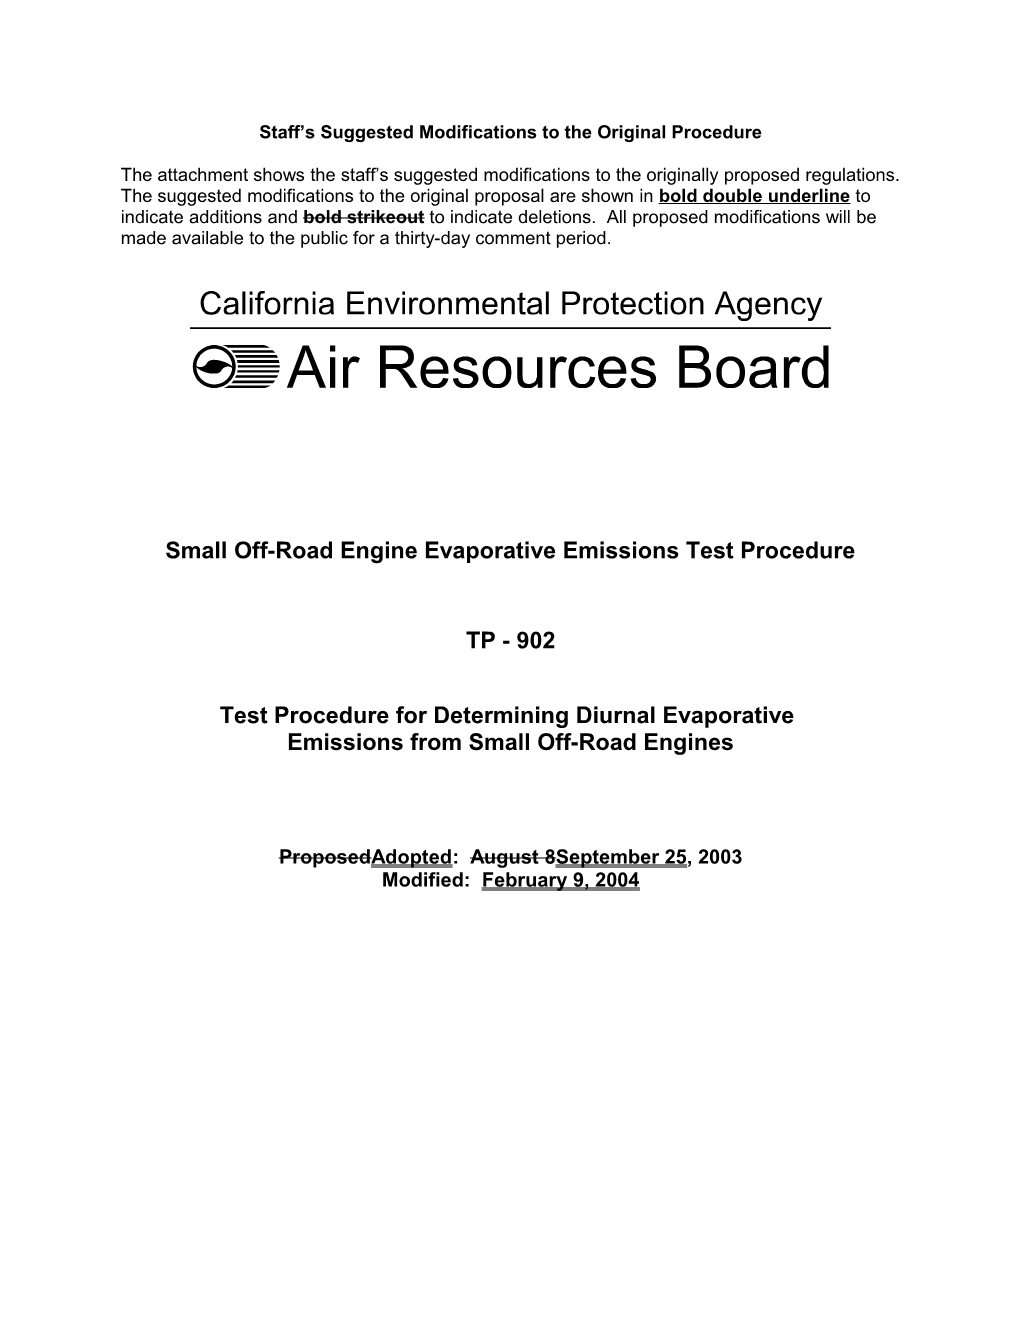 Rulemaking Informal: 2003-05-08 Draft Evaporative Emission Test Procedure TP-902